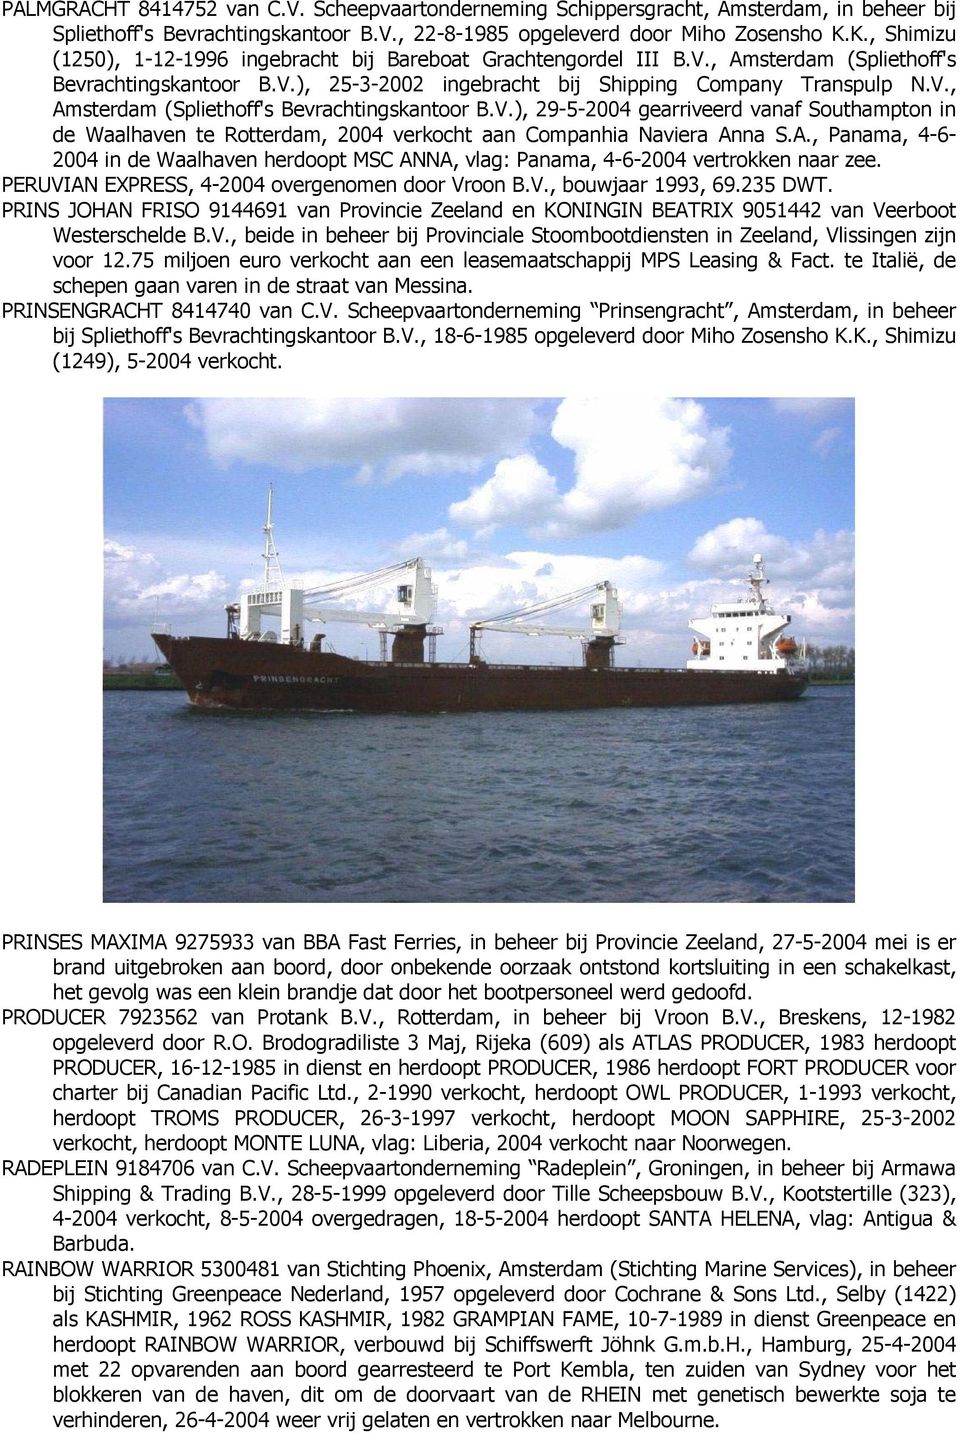 A., Panama, 4-6- 2004 in de Waalhaven herdoopt MSC ANNA, vlag: Panama, 4-6-2004 vertrokken naar zee. PERUVIAN EXPRESS, 4-2004 overgenomen door Vroon B.V., bouwjaar 1993, 69.235 DWT.